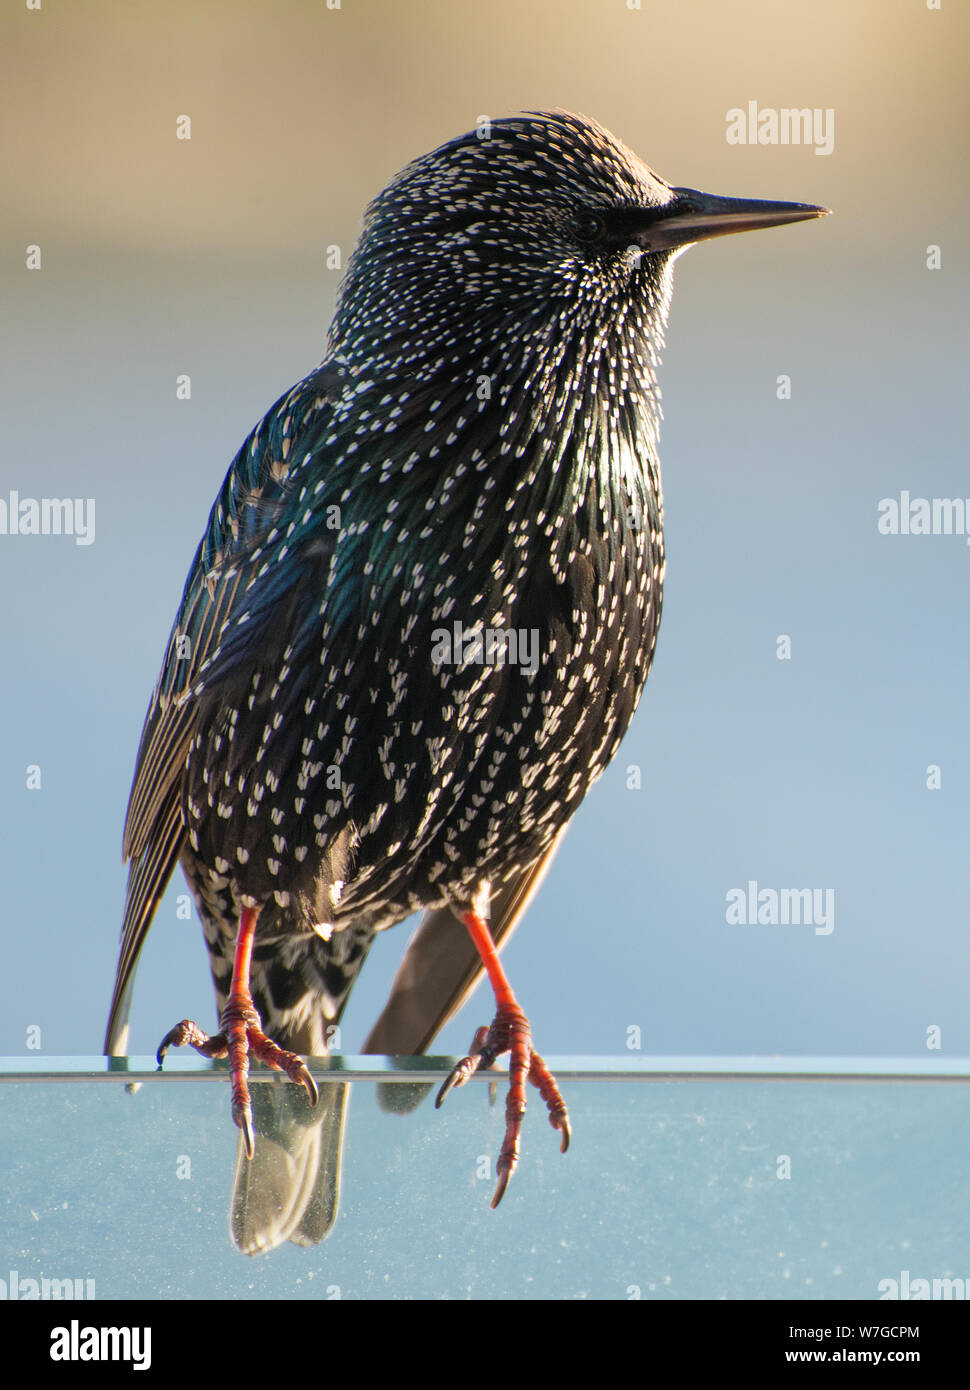 Starling visto in primo piano illuminato dal sole del tardo pomeriggio che mostra l'iridescenza del suo piumaggio Foto Stock